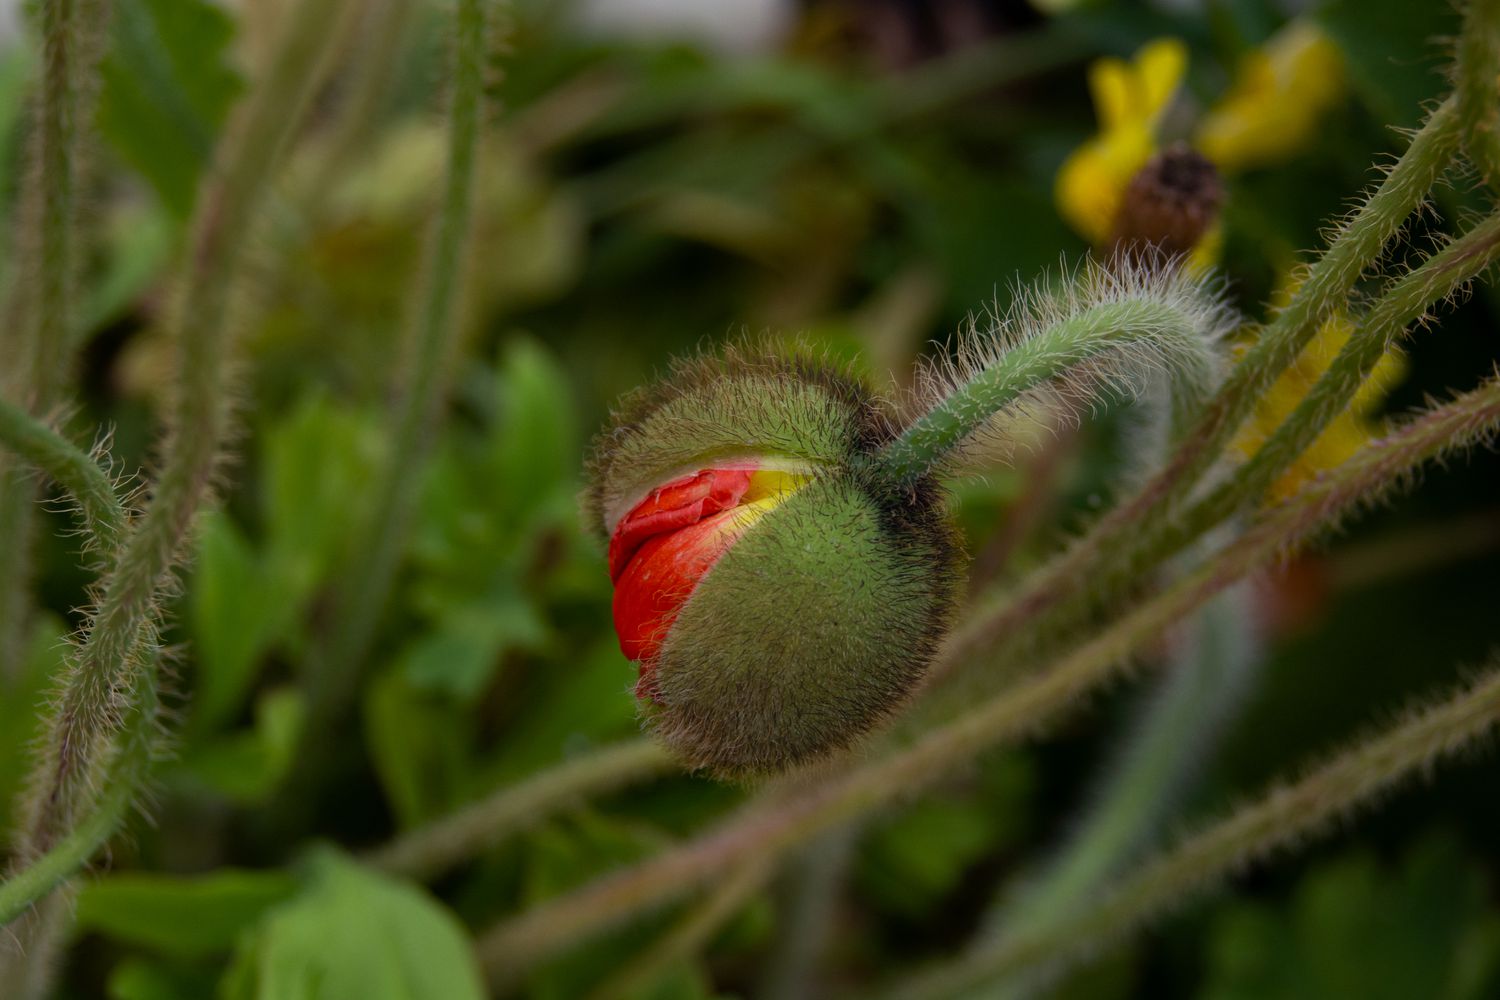 Botão de flor vermelha de papoula islandesa em close-up de caule felpudo